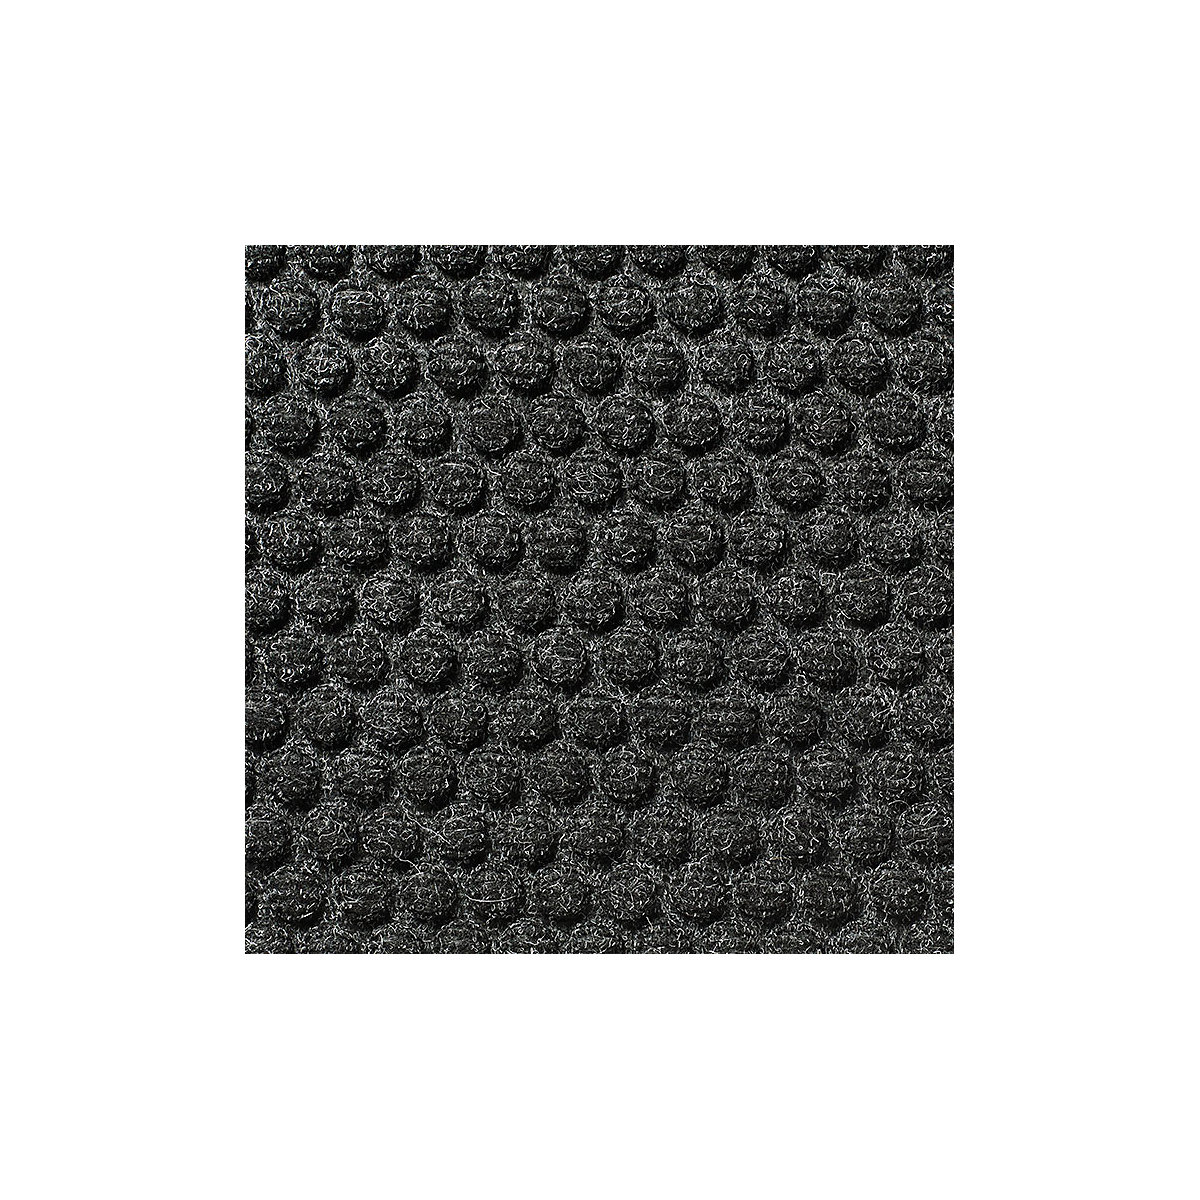 Mata wychwytująca brud, absorbująca – NOTRAX, dł. x szer. 900 x 600 mm, antracytowa-6